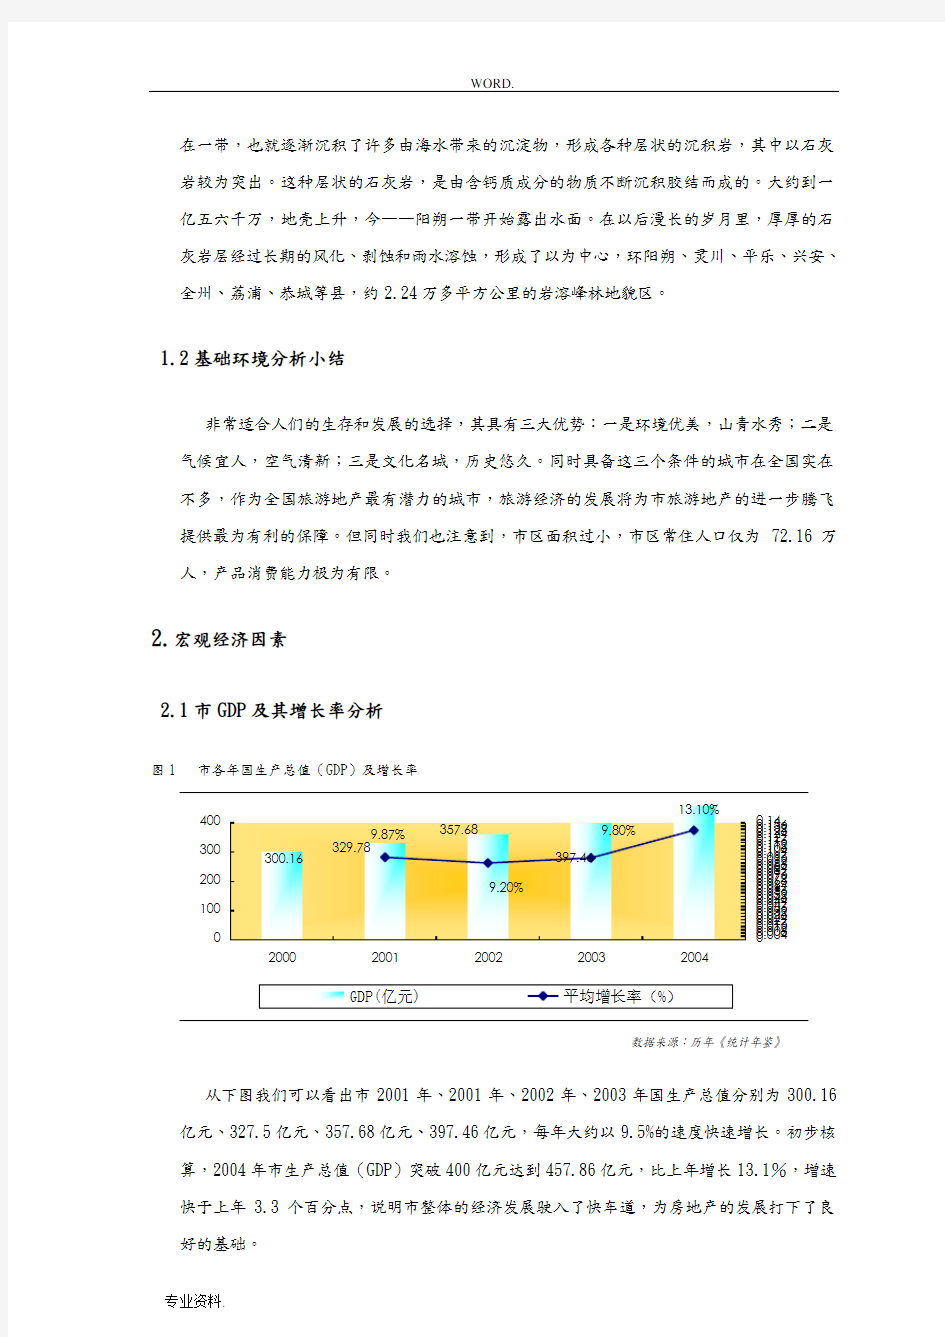 桂林房地产市场分析报告文案